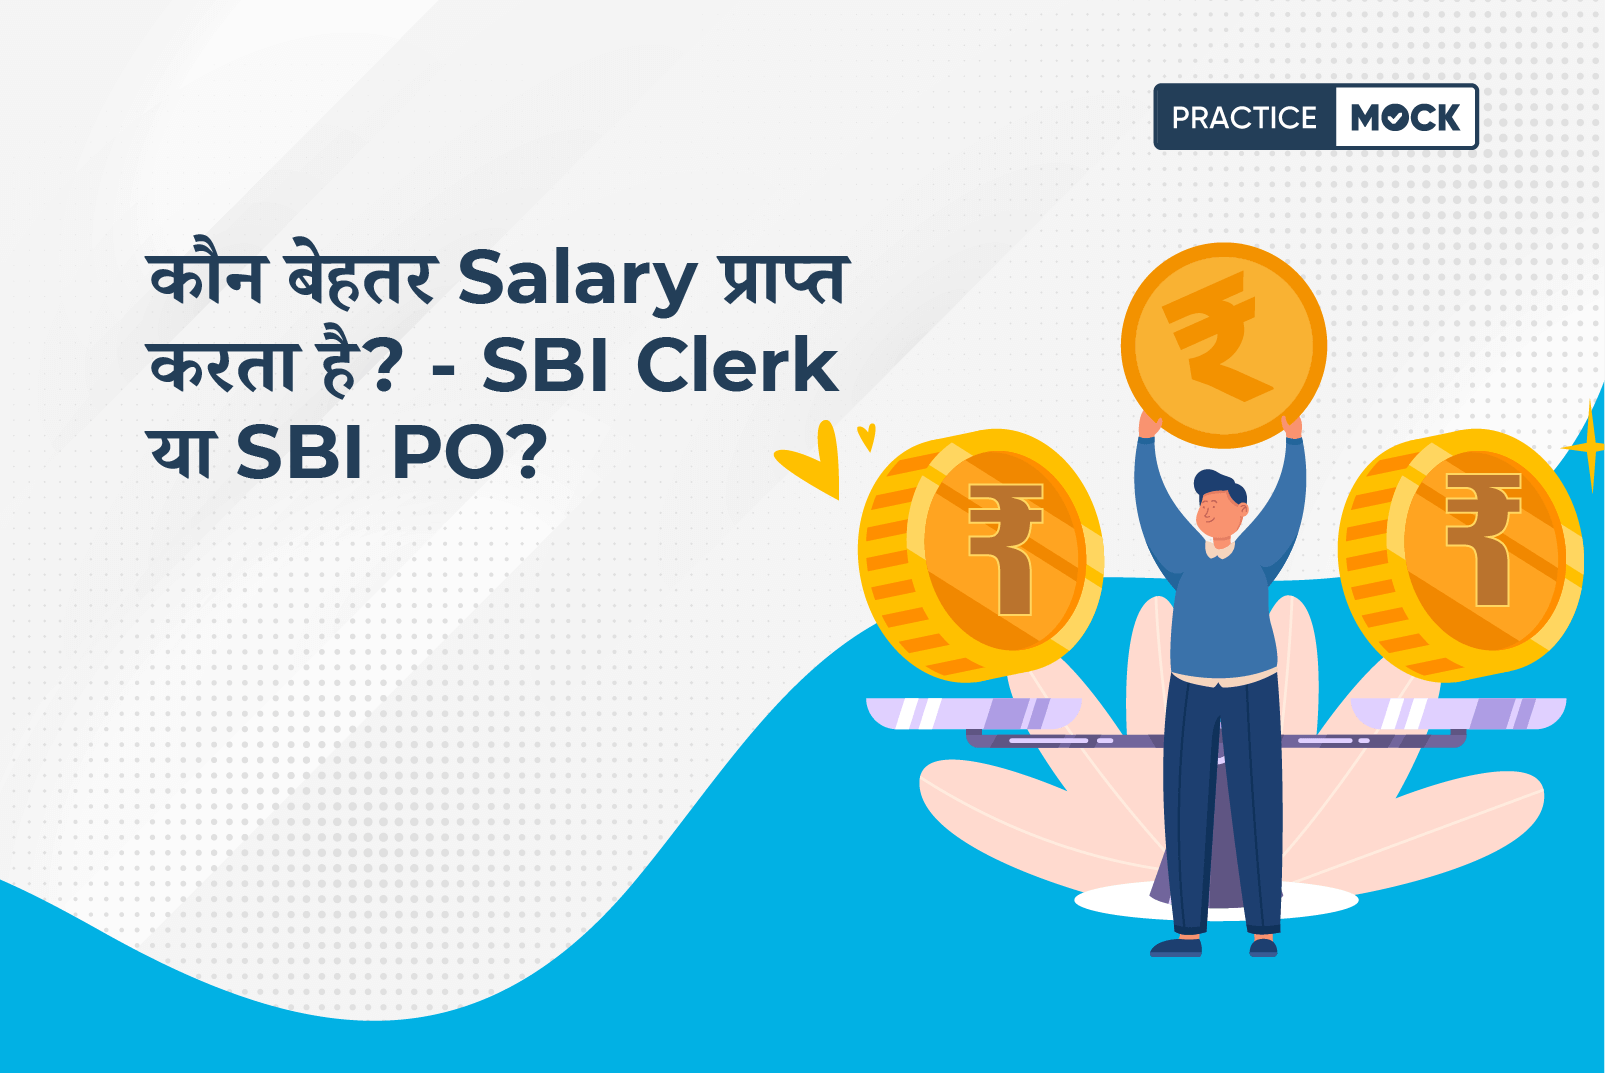 SBI Clerk Salary vs SBI PO Salary